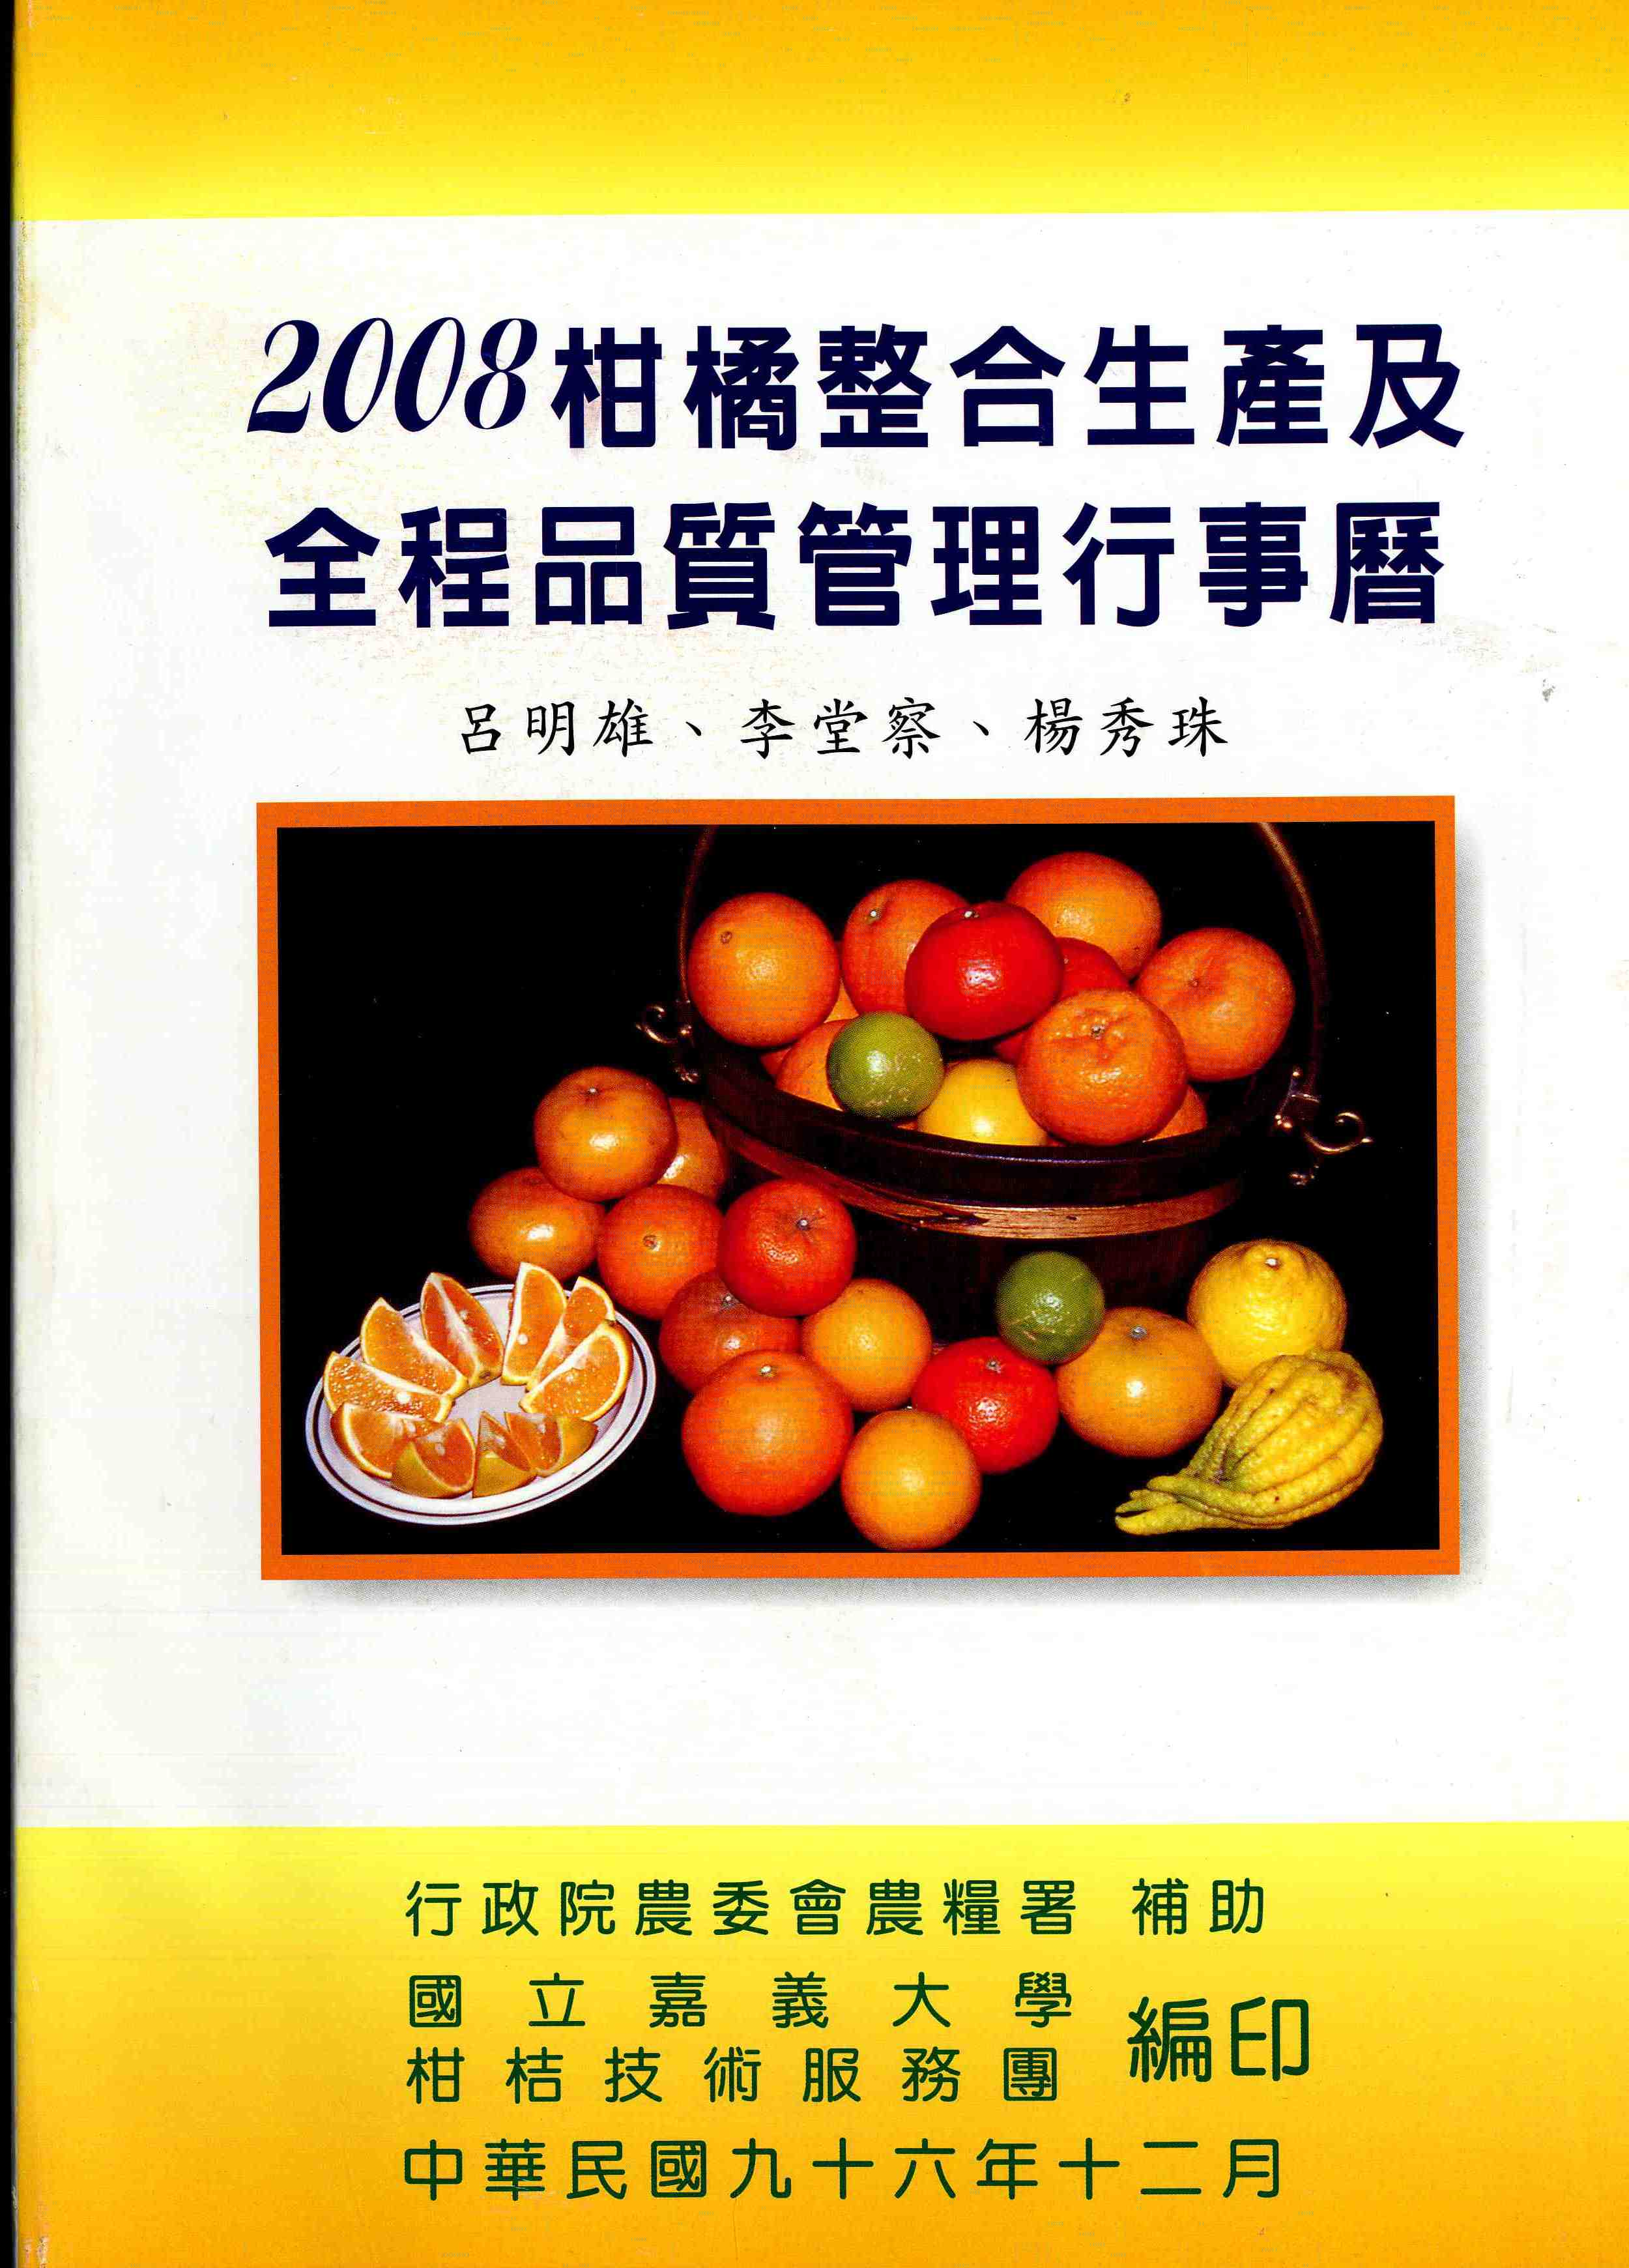 2008柑橘整合生產及全程品質管理行事曆